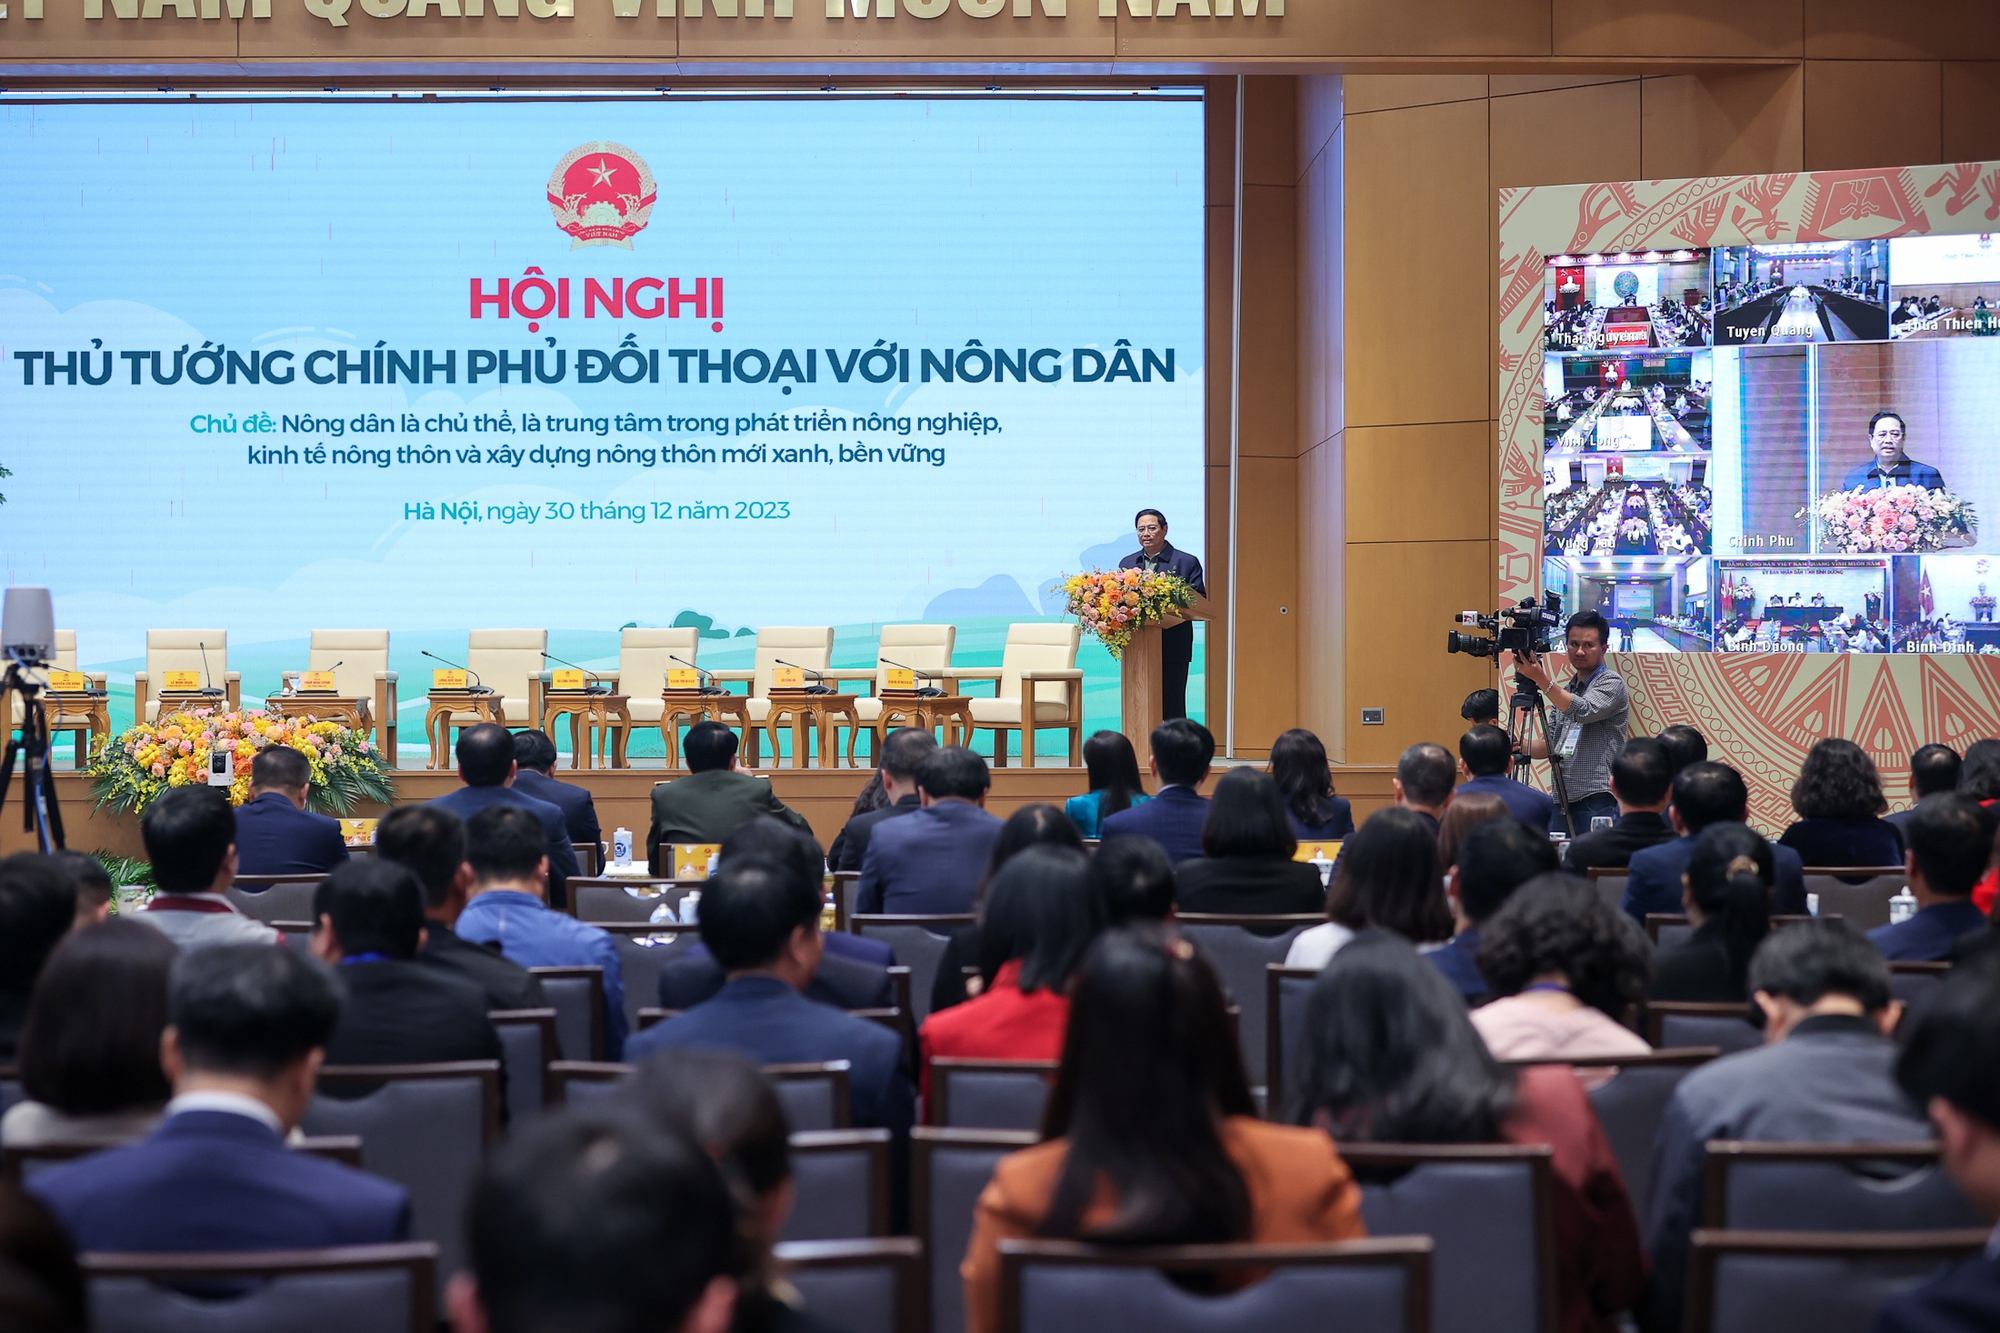 Thủ tướng Phạm Minh Chính nhấn mạnh, cần làm mới những động lực cũ và bổ sung thêm các động lực phát triển mới như kinh tế xanh, kinh tế số, kinh tế tuần hoàn, kinh tế chia sẻ, kinh tế tri thức - Ảnh: VGP/Nhật Bắc